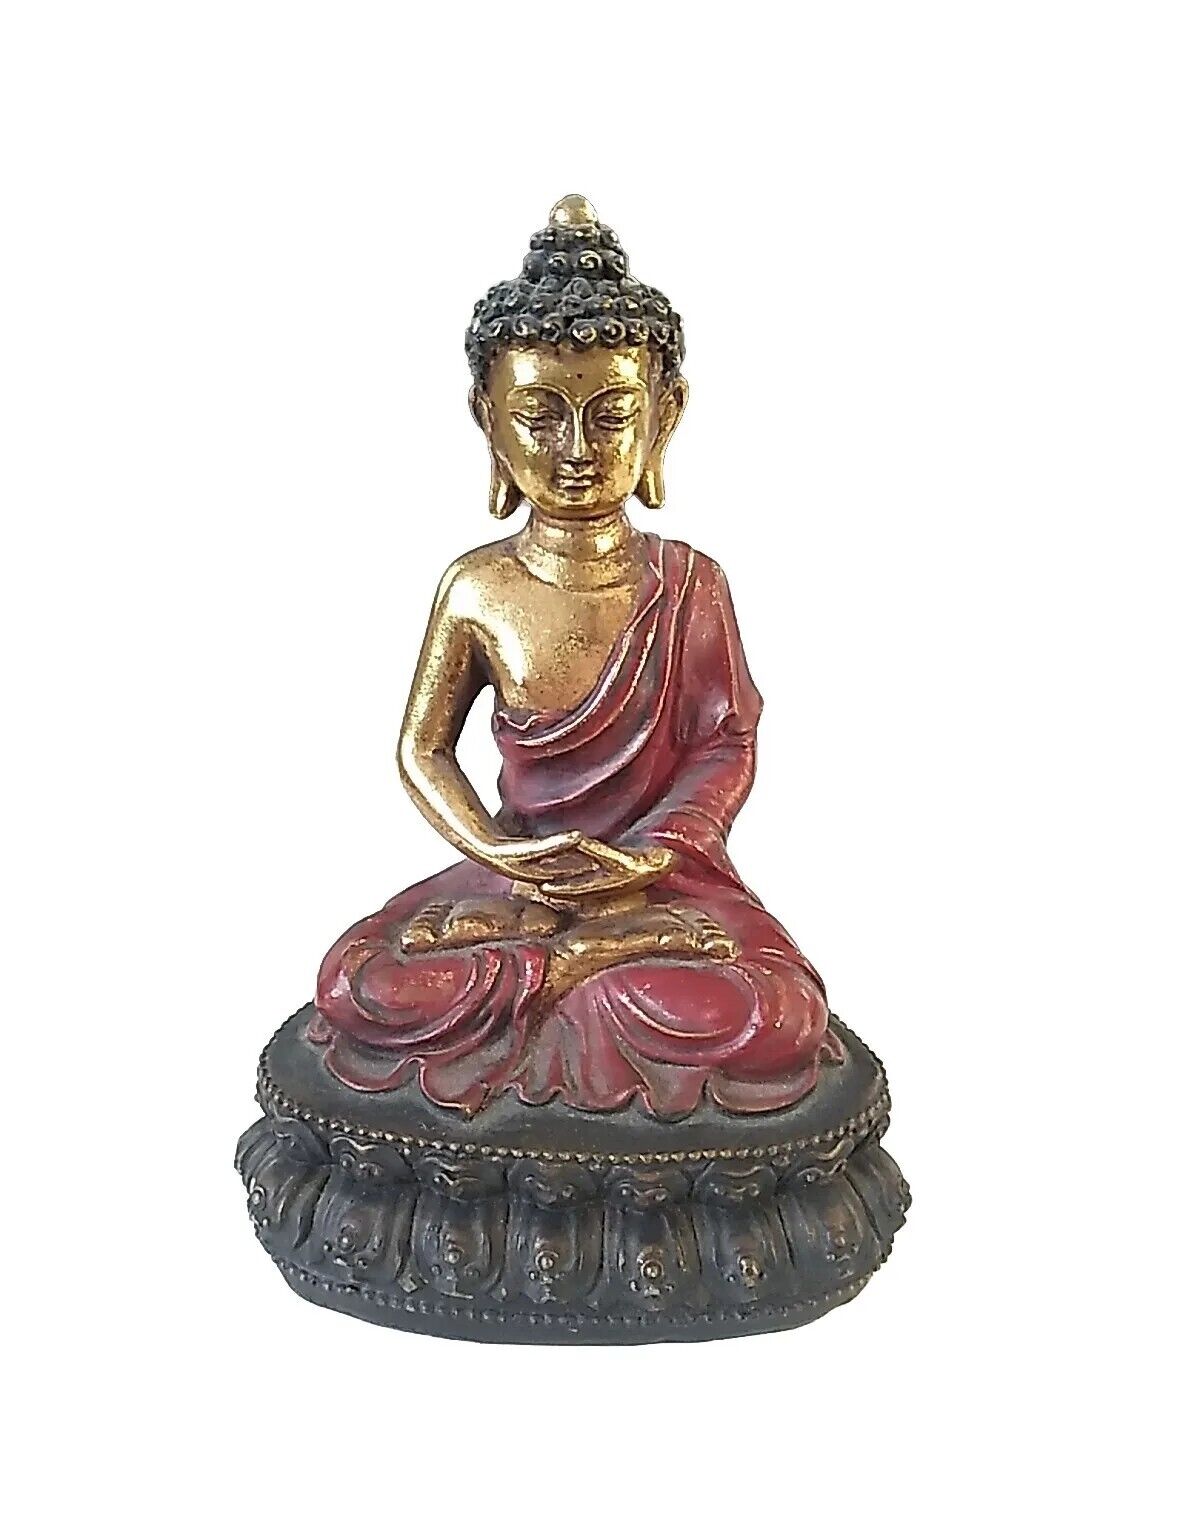 Buddha Meditating On Lotus Statue Figurine Resin 5.25 